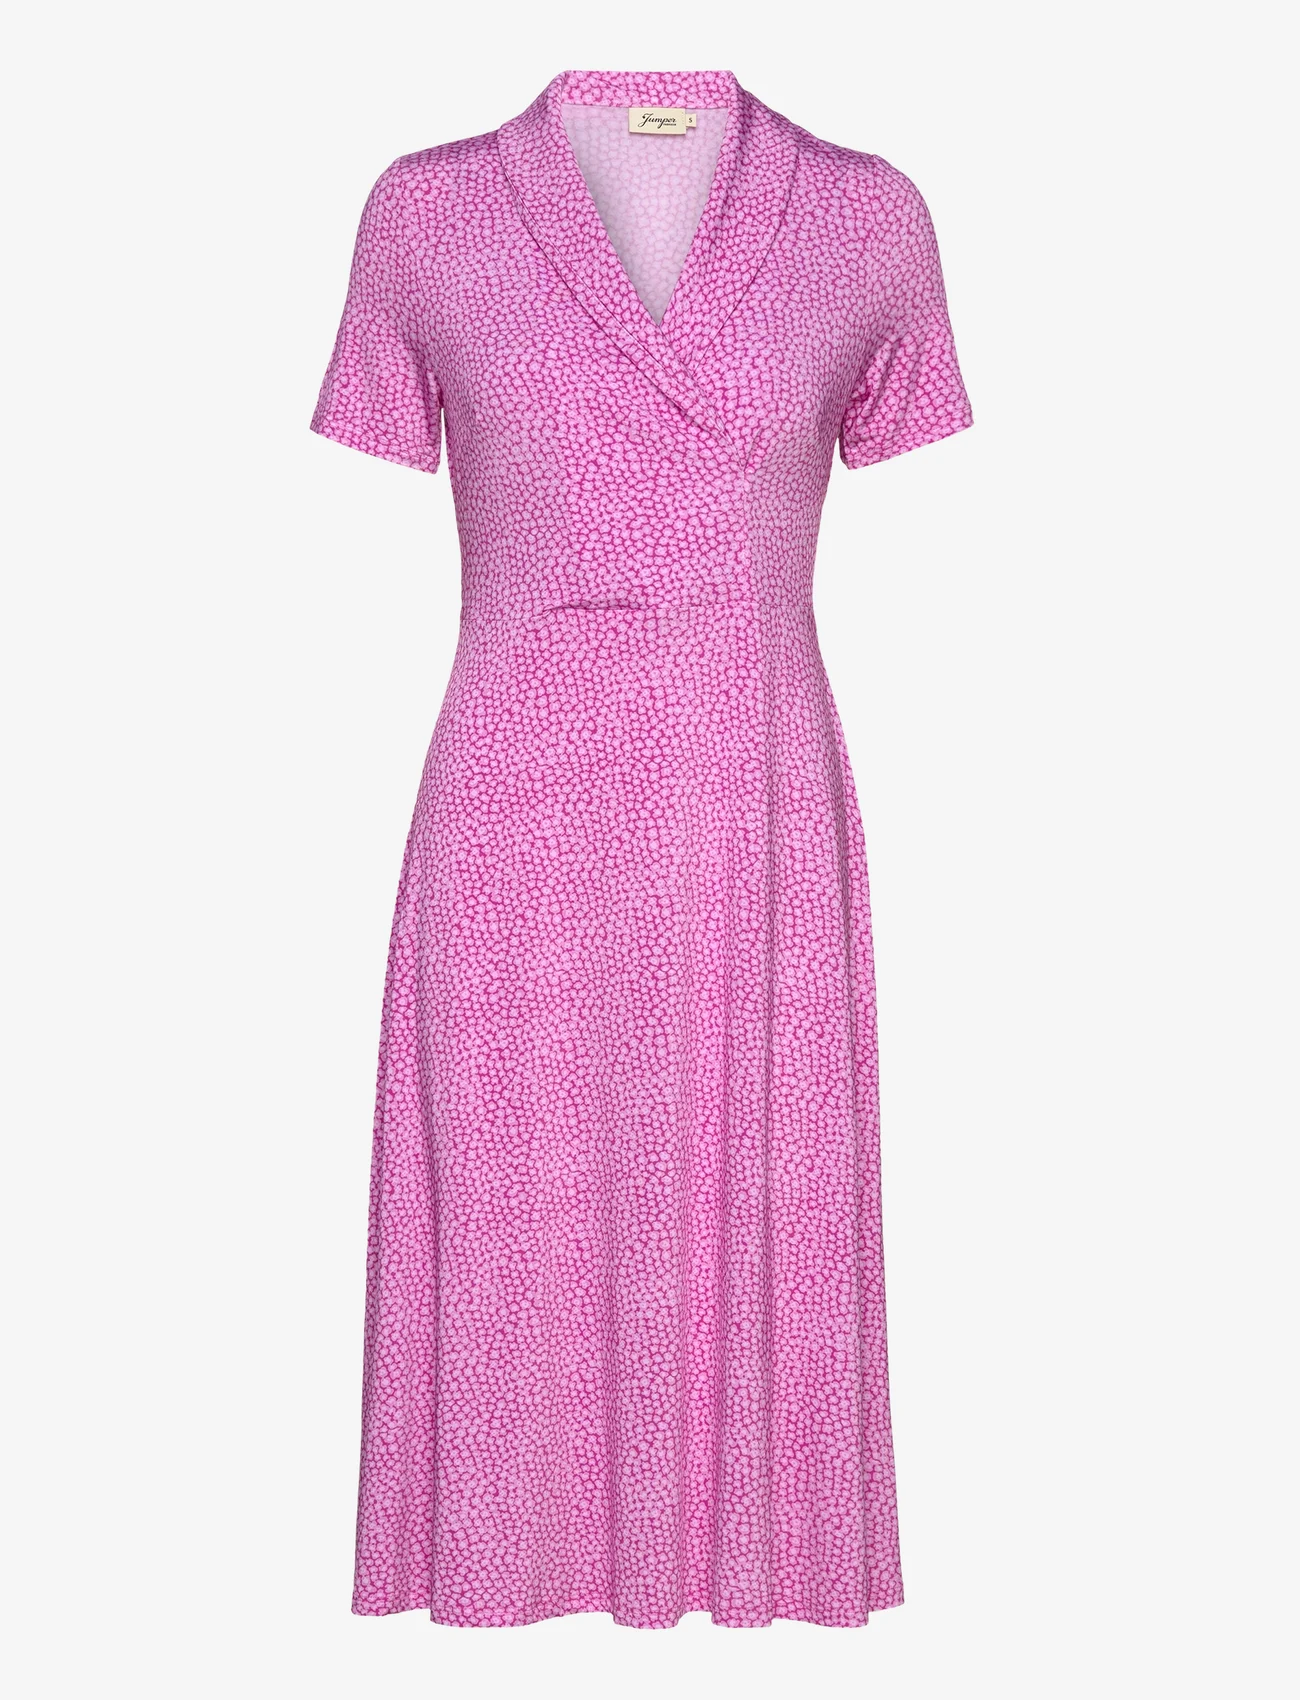 Jumperfabriken - Wendy SS - wrap dresses - pink - 0